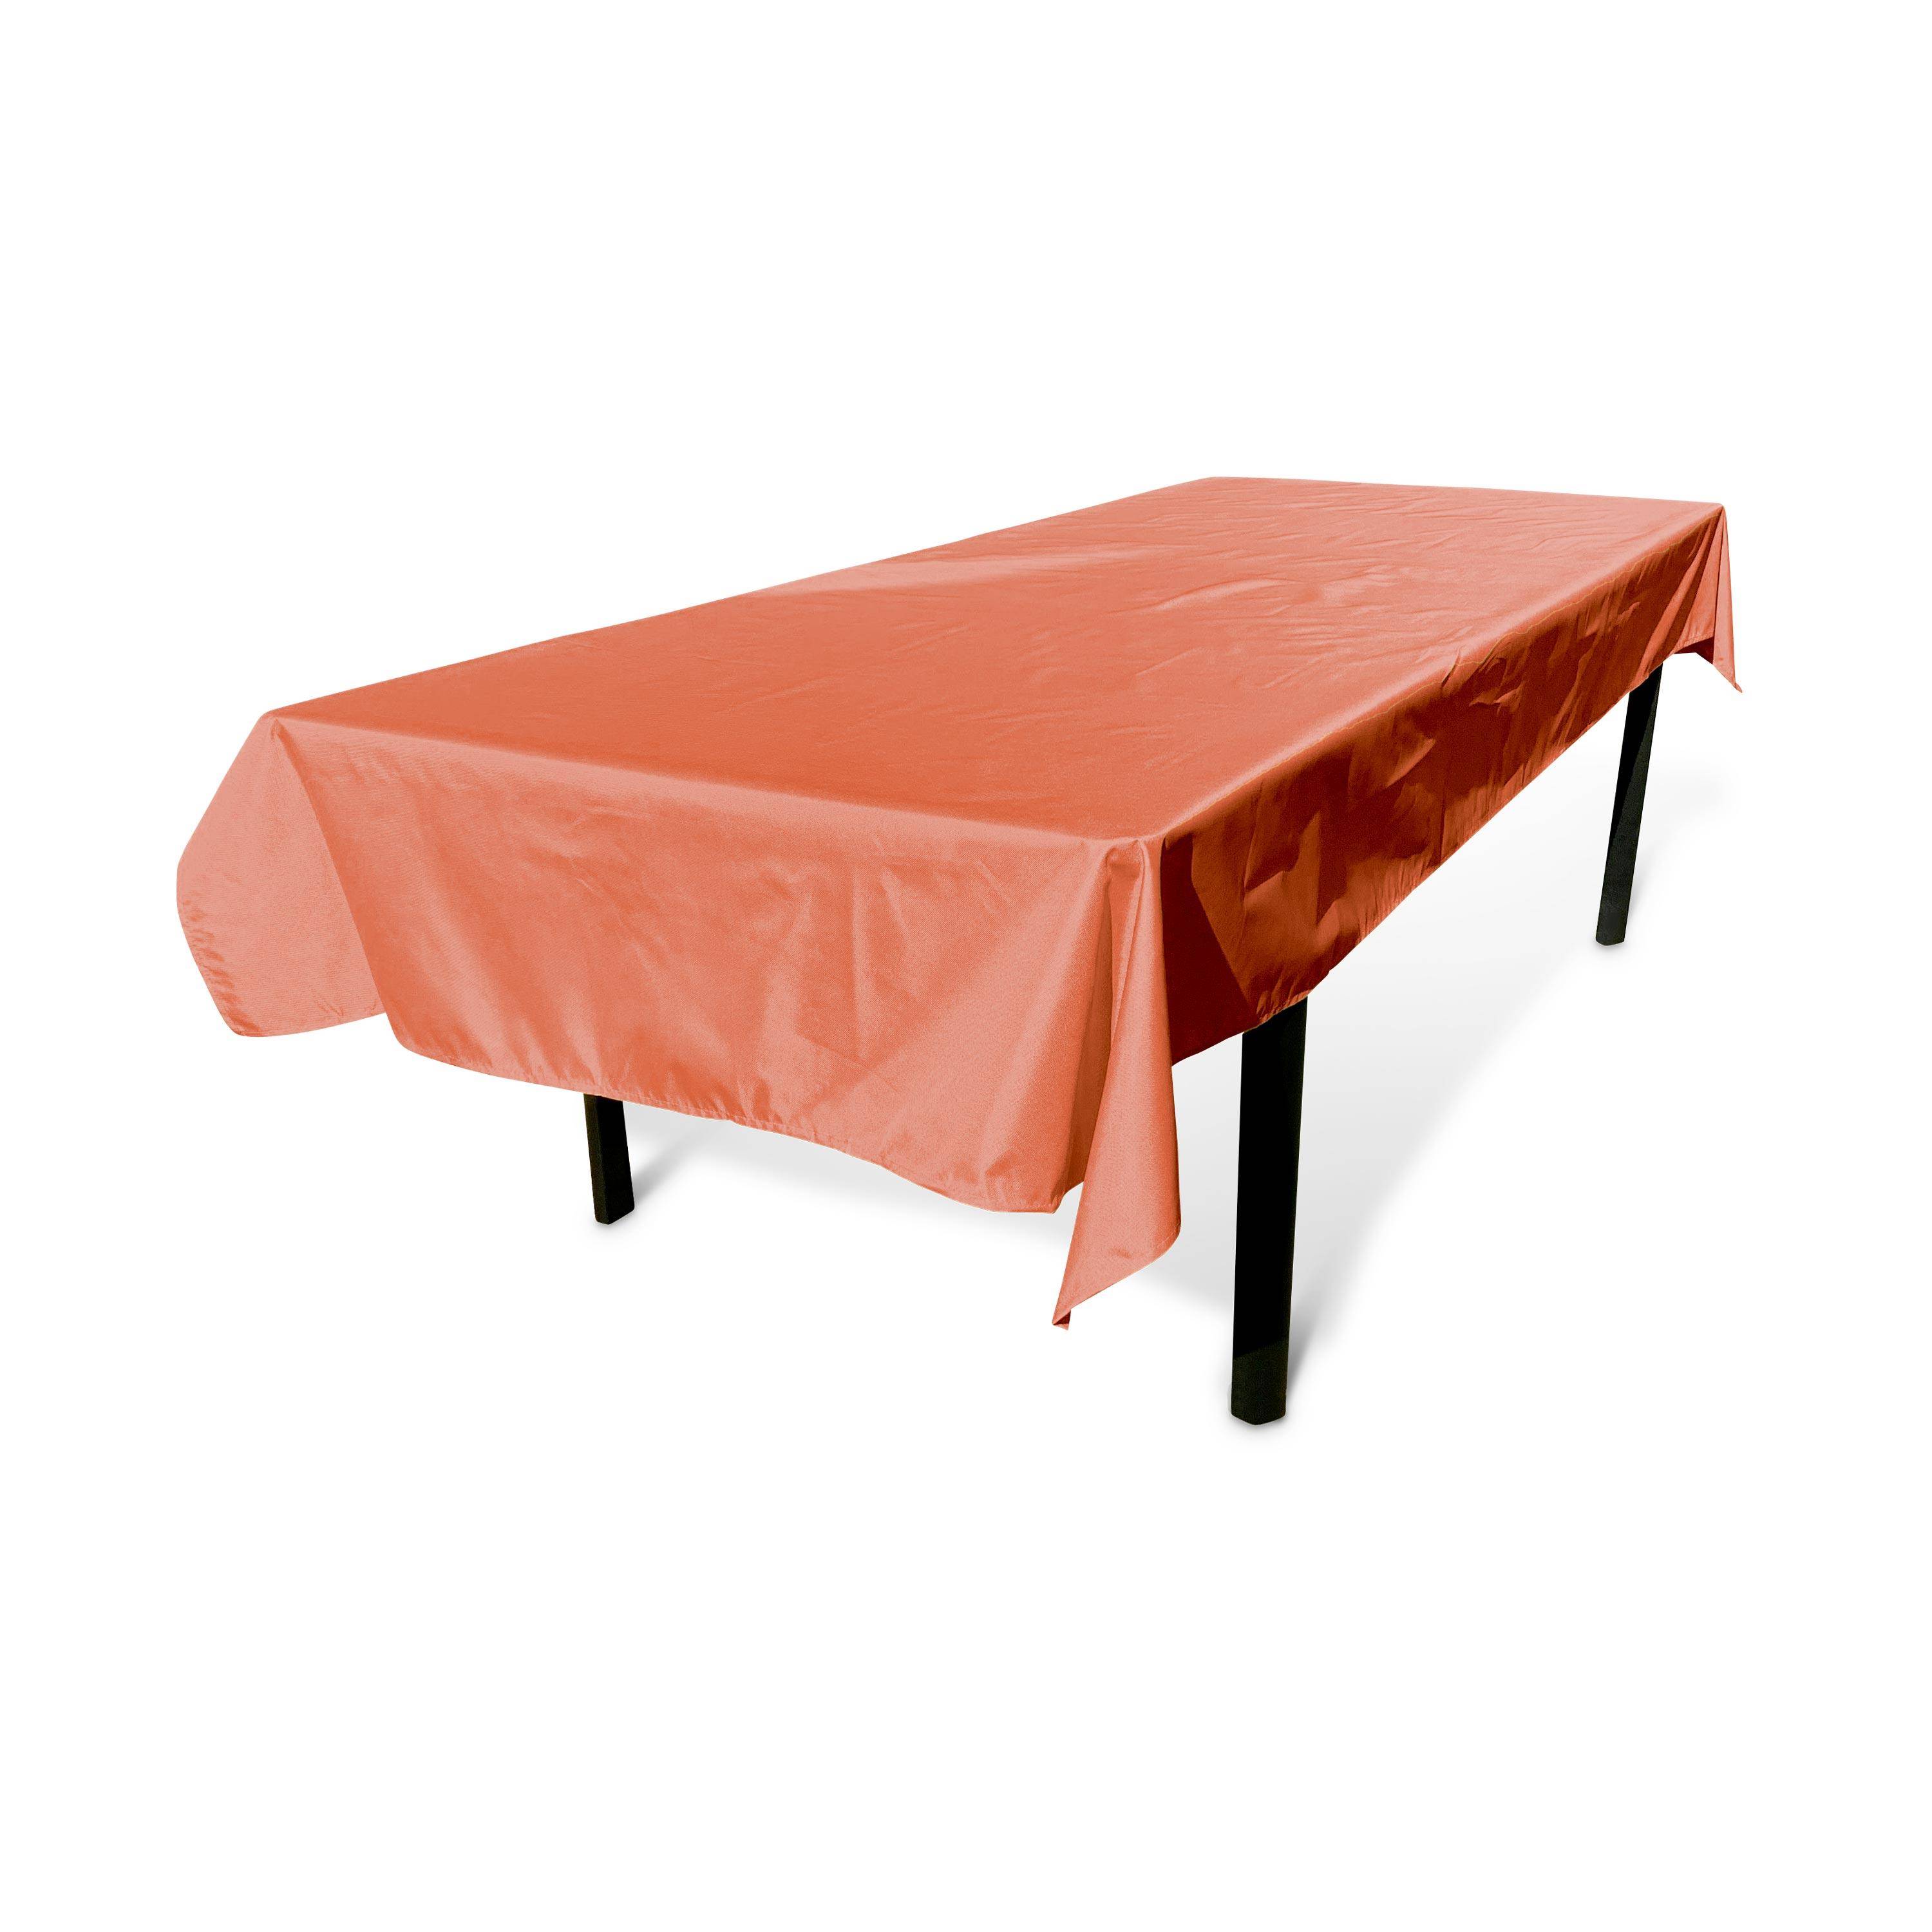 Outdoor-Tischdecke 300 x 140 cm Terrakotta, 100% Polyester, schützt den Tisch, UV-Schutz, sommerlicher Stil Photo1